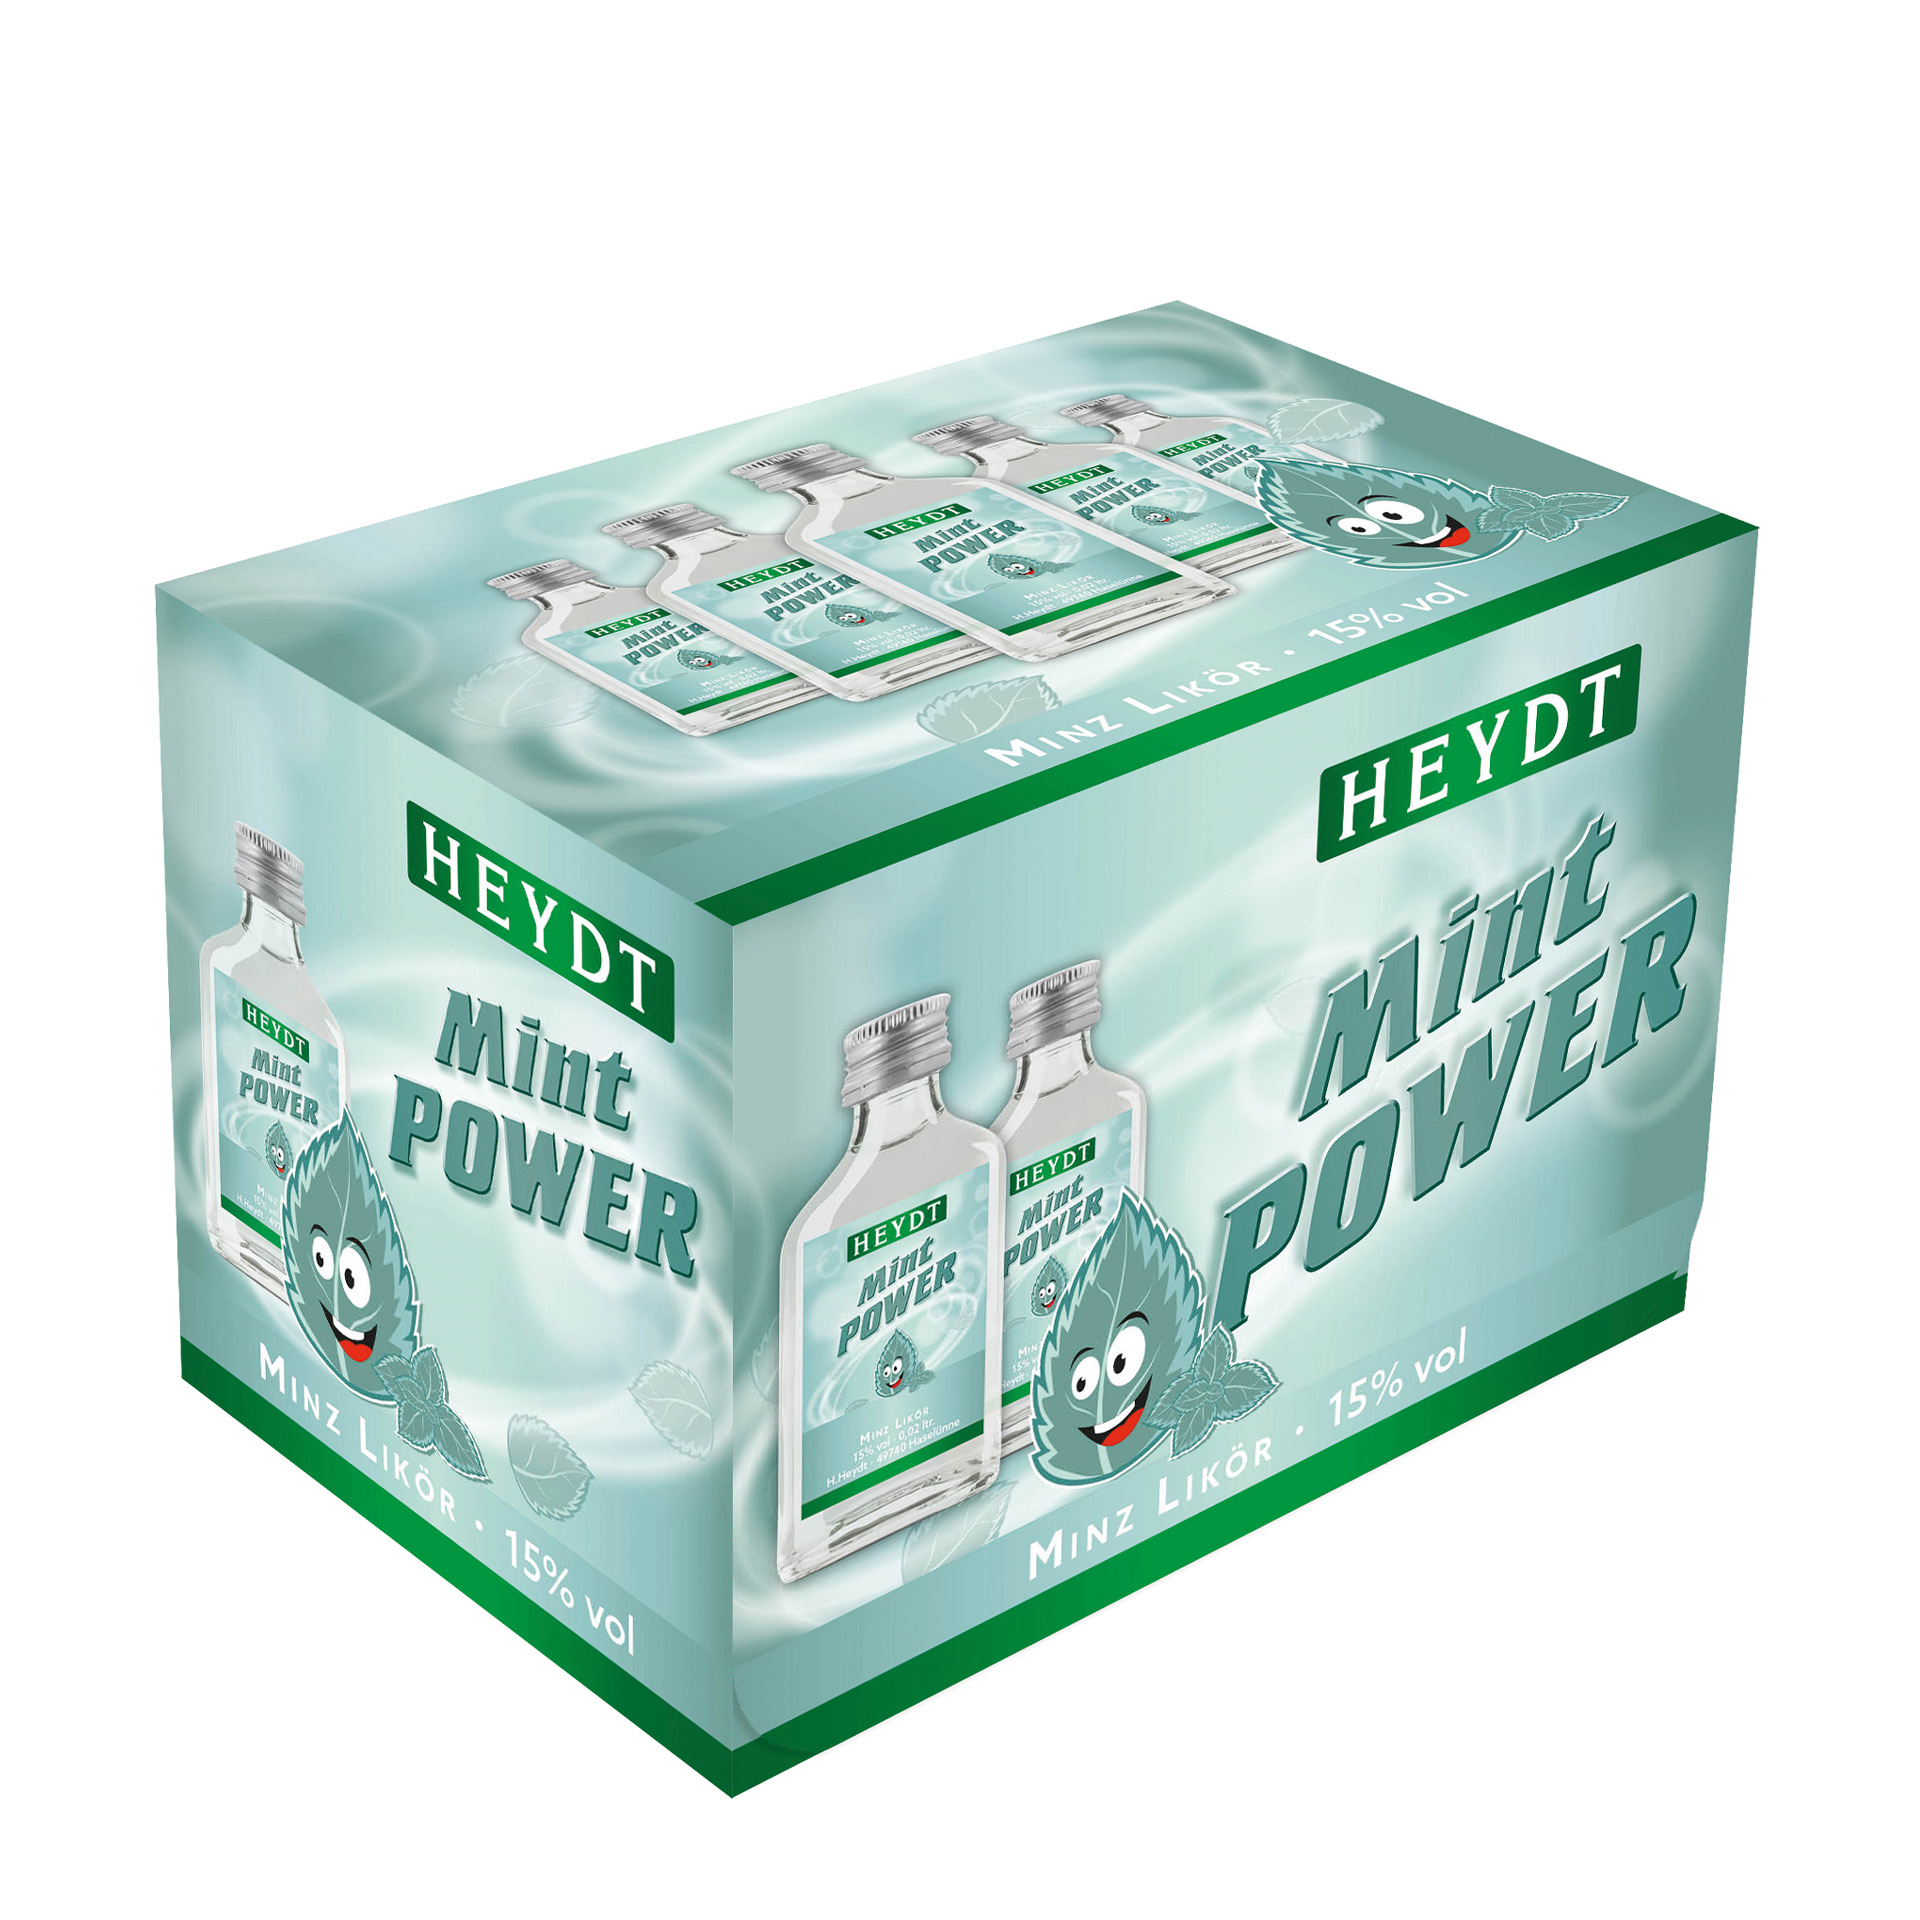 Heydt - Mint Power - 12er Pack